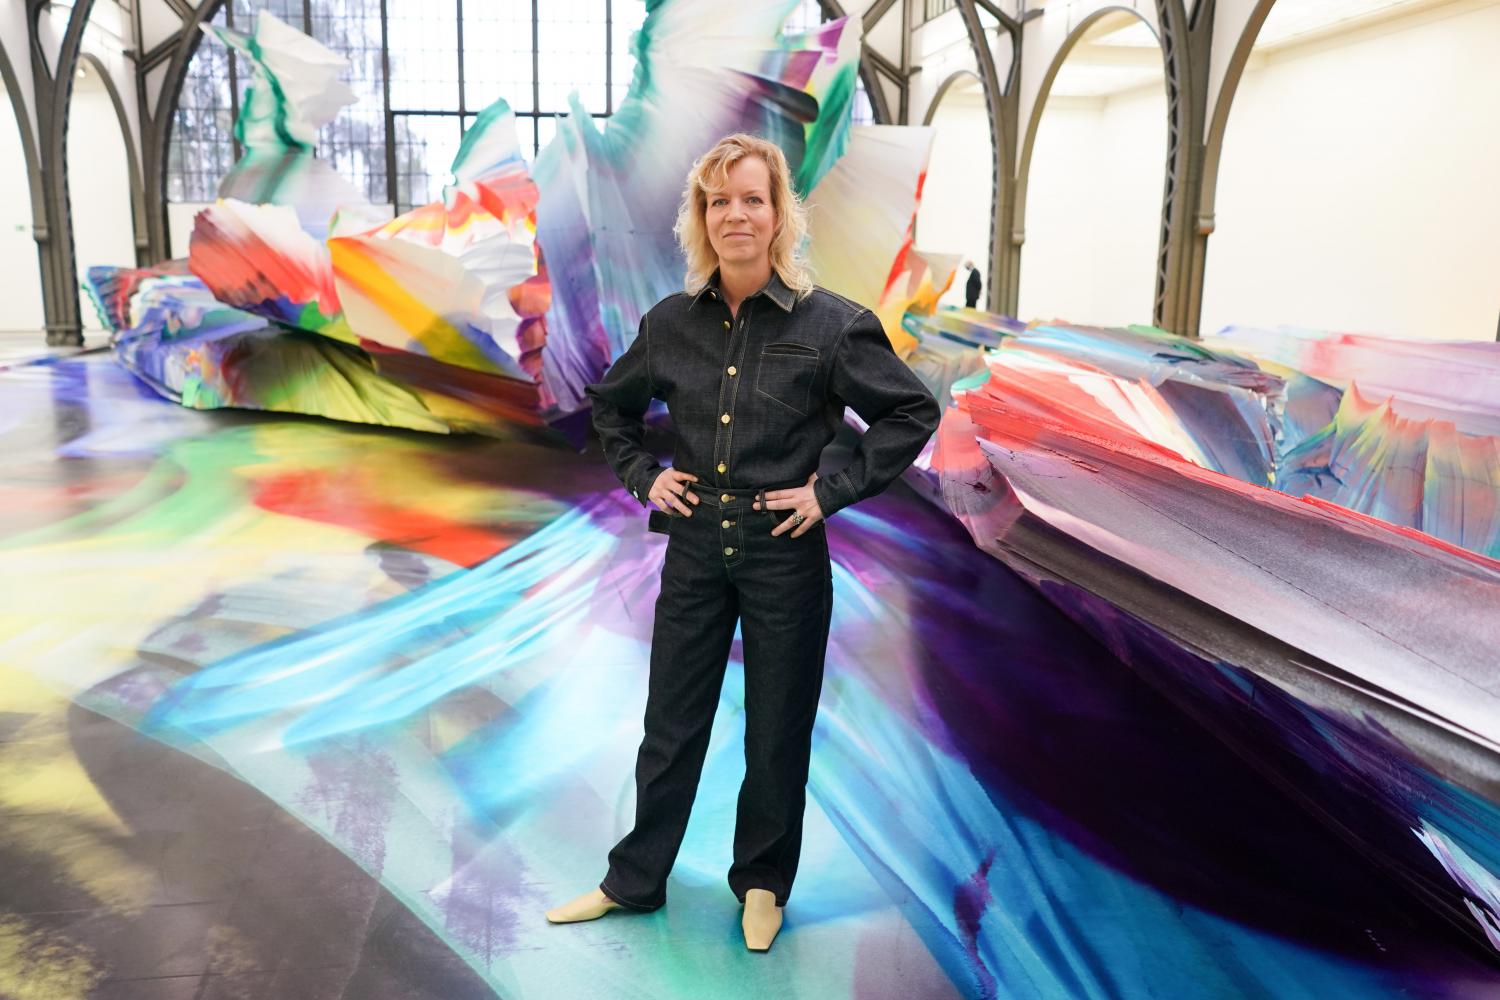 Die Künstlerin Katharina Grosse steht vor ihrem Kunstwerk "It Wasn’t Us" im Museum Hamburger Bahnhof. Im Jahr 2020 verzeichnete ihr Namen den größten Anstieg beim Suchvolumen unter allen Künstlerinnen und Künstlern